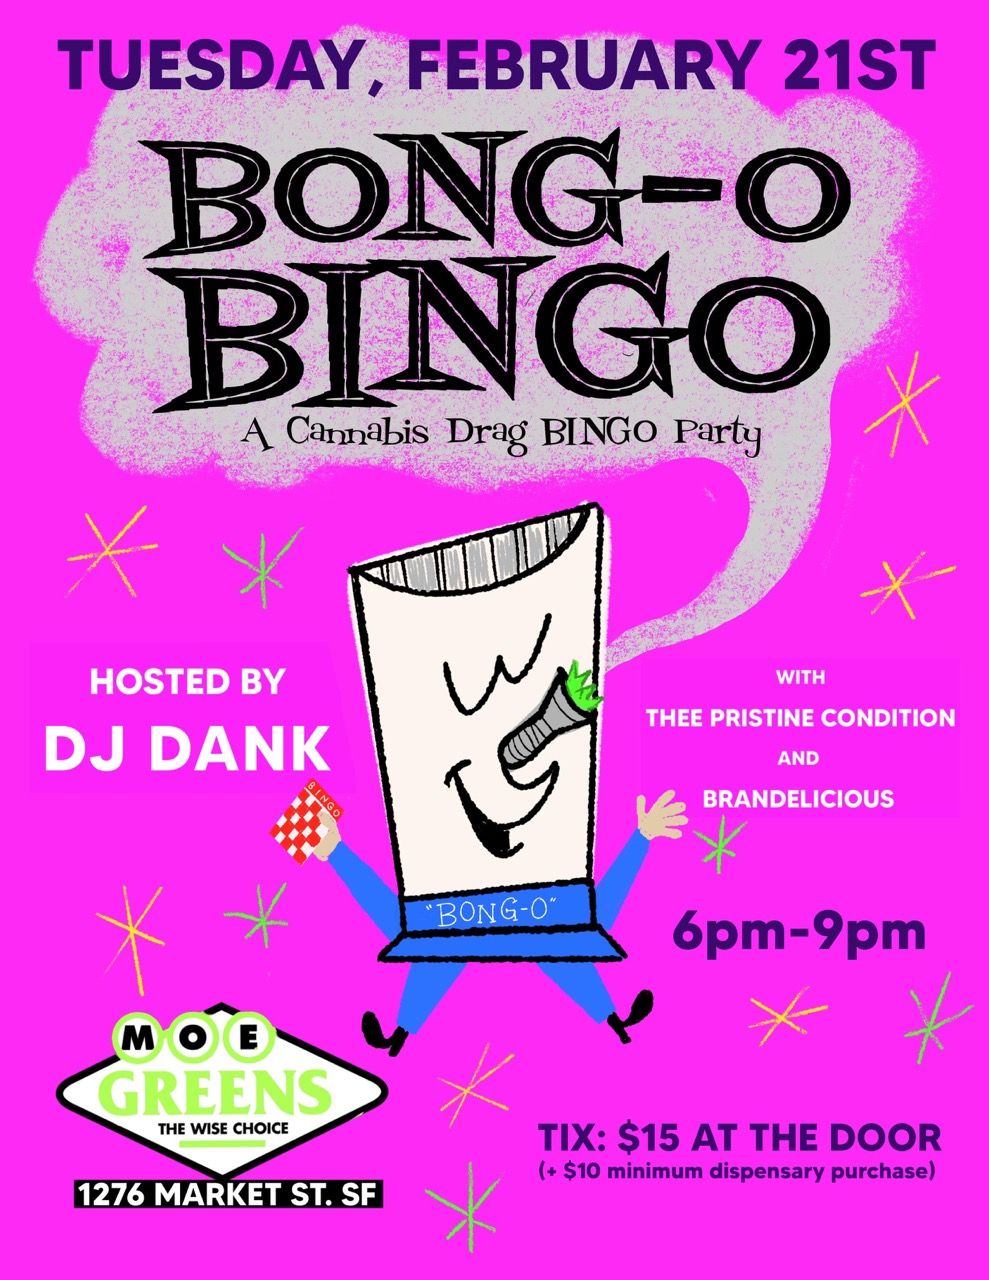 Bong-o bingo